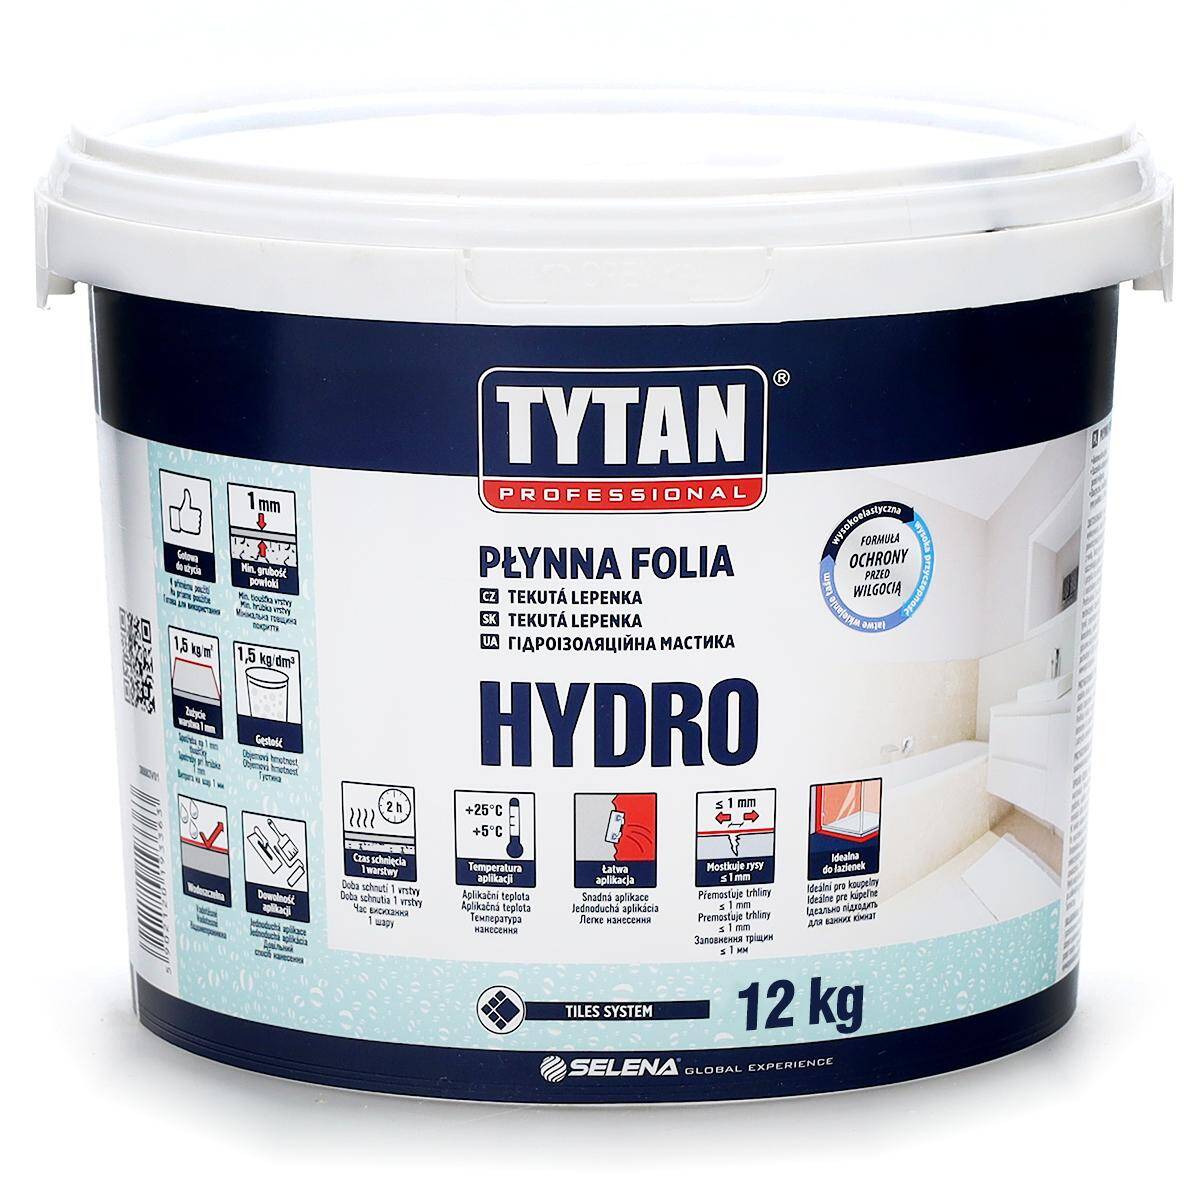 Płynna folia Hydro 12 kg TYTAN